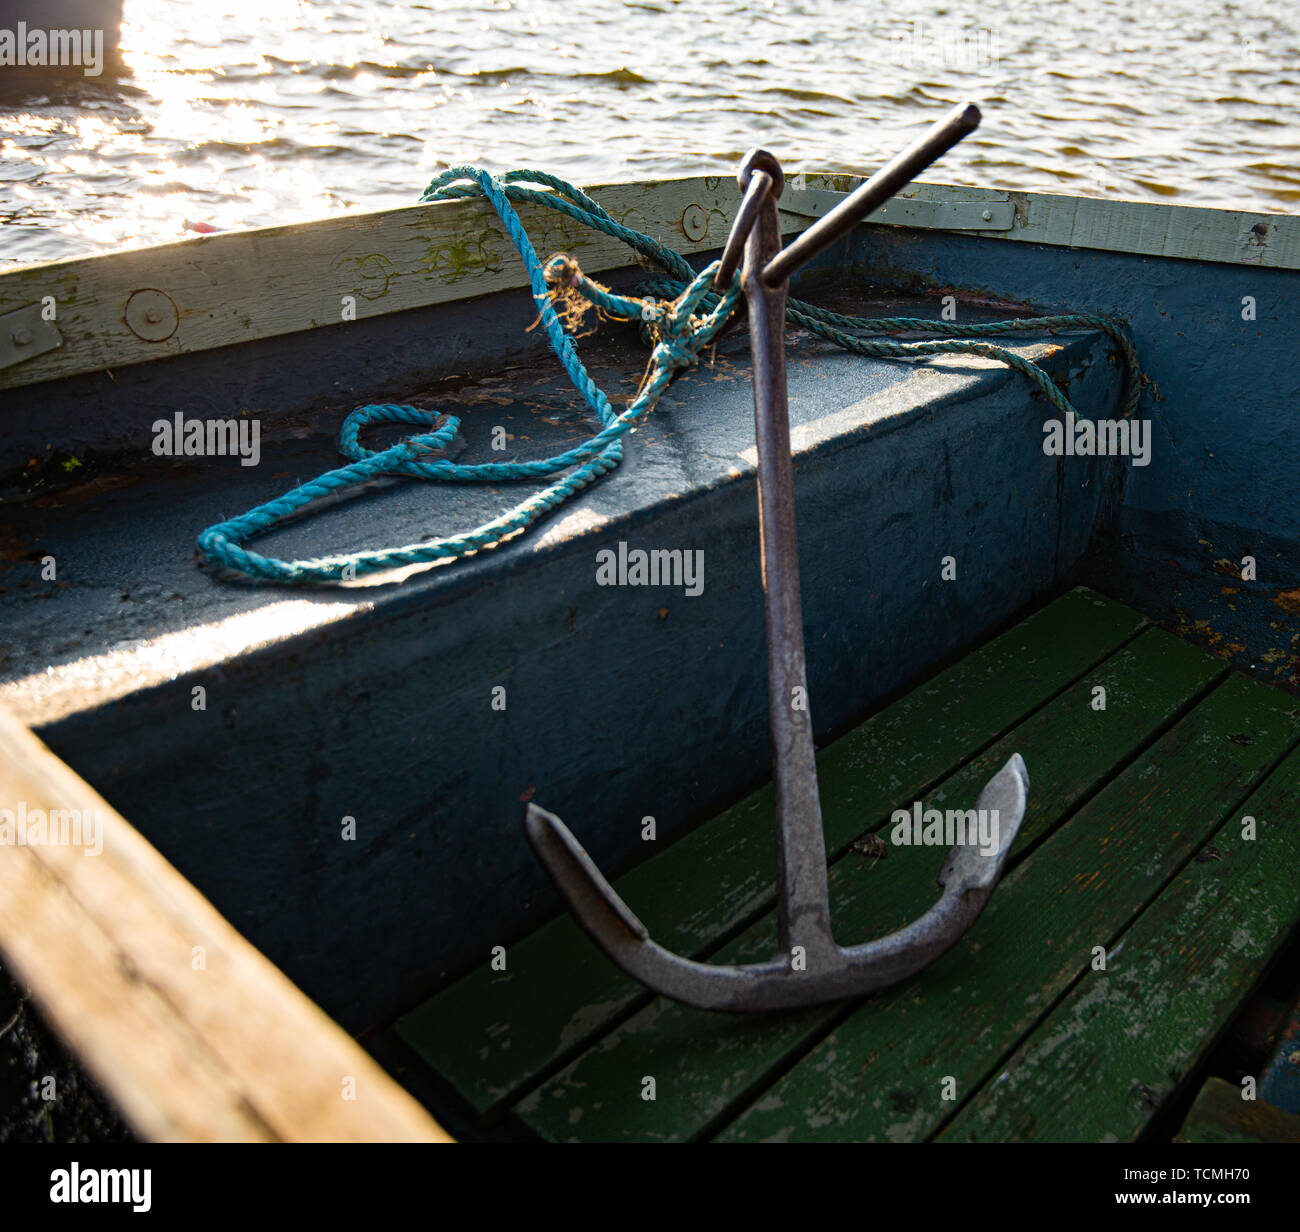 Ein großes metallisches Anker sitzt in einem kleinen blauen Ruderboot. Während einer frühen Sonnenuntergang auf einem kleinen See genommen Stockfoto